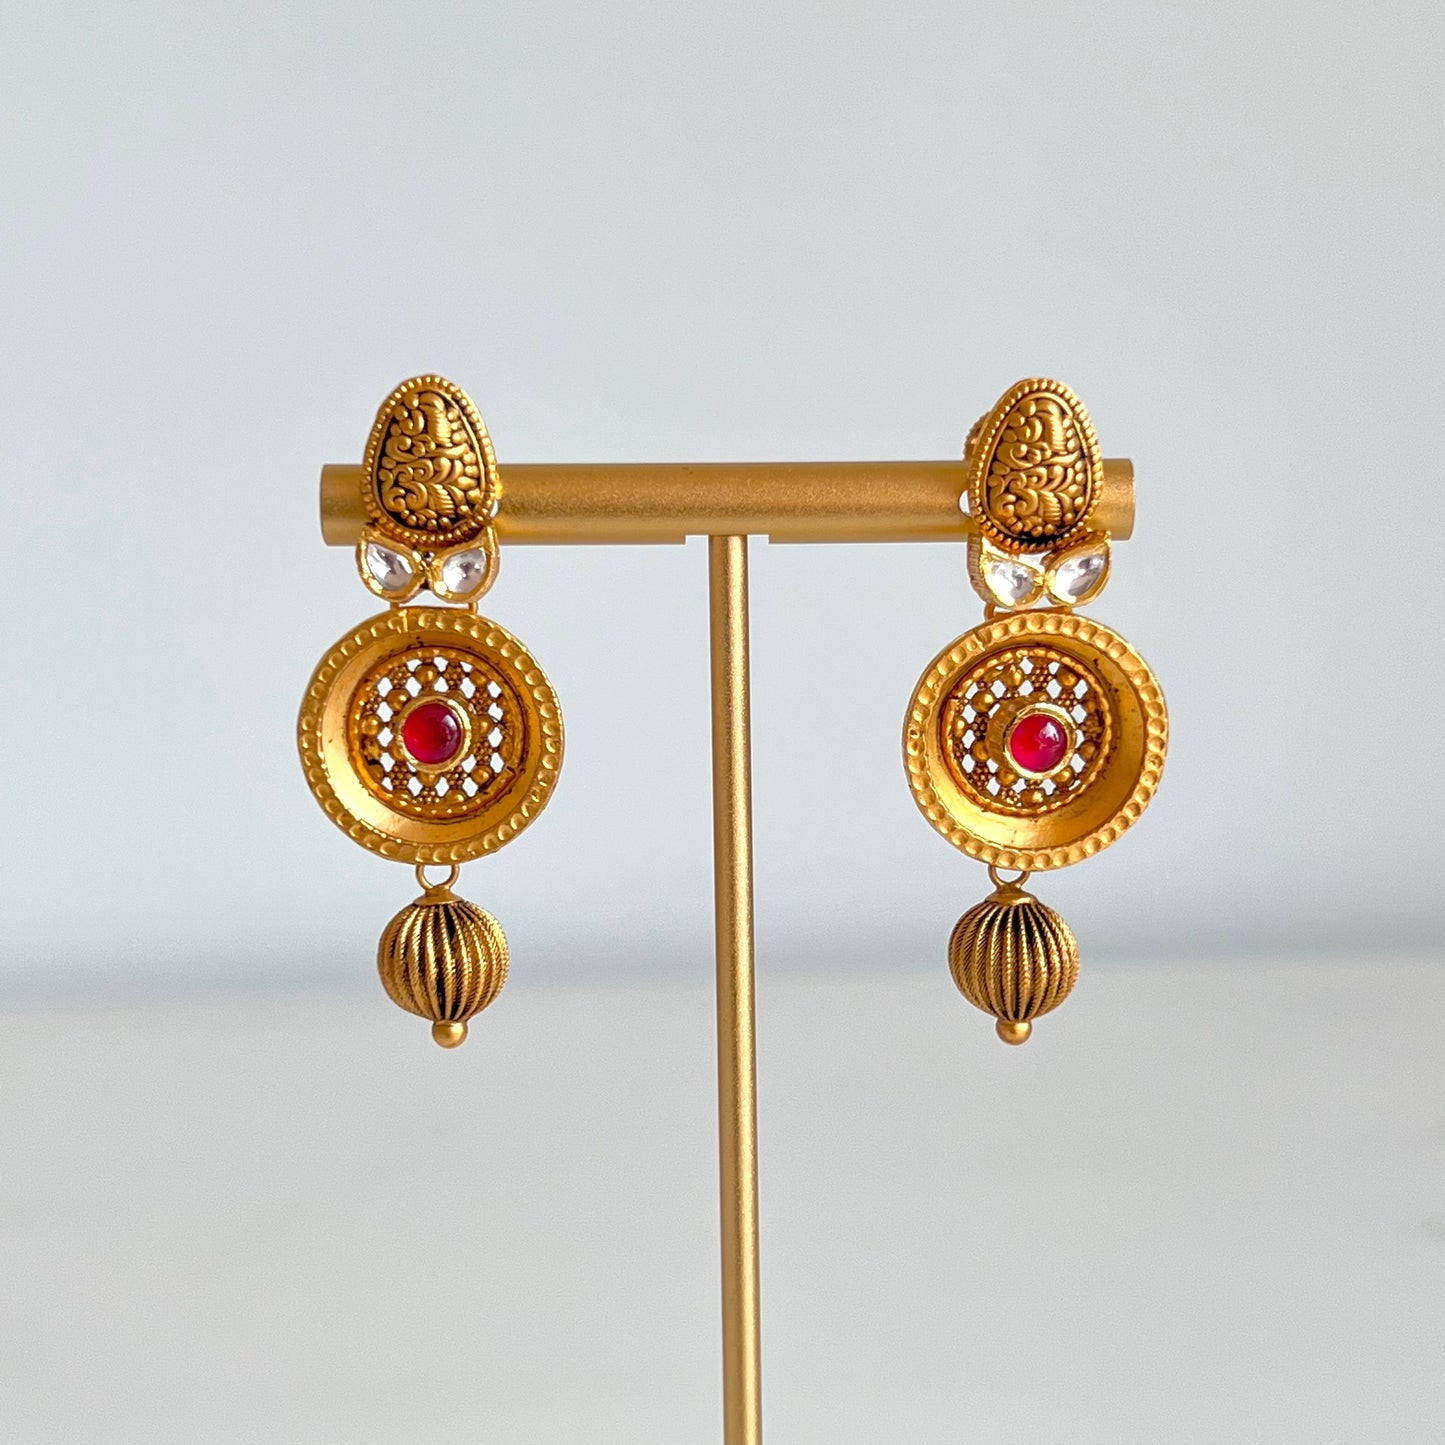 Decorative & Distinctive Antique Gold Set